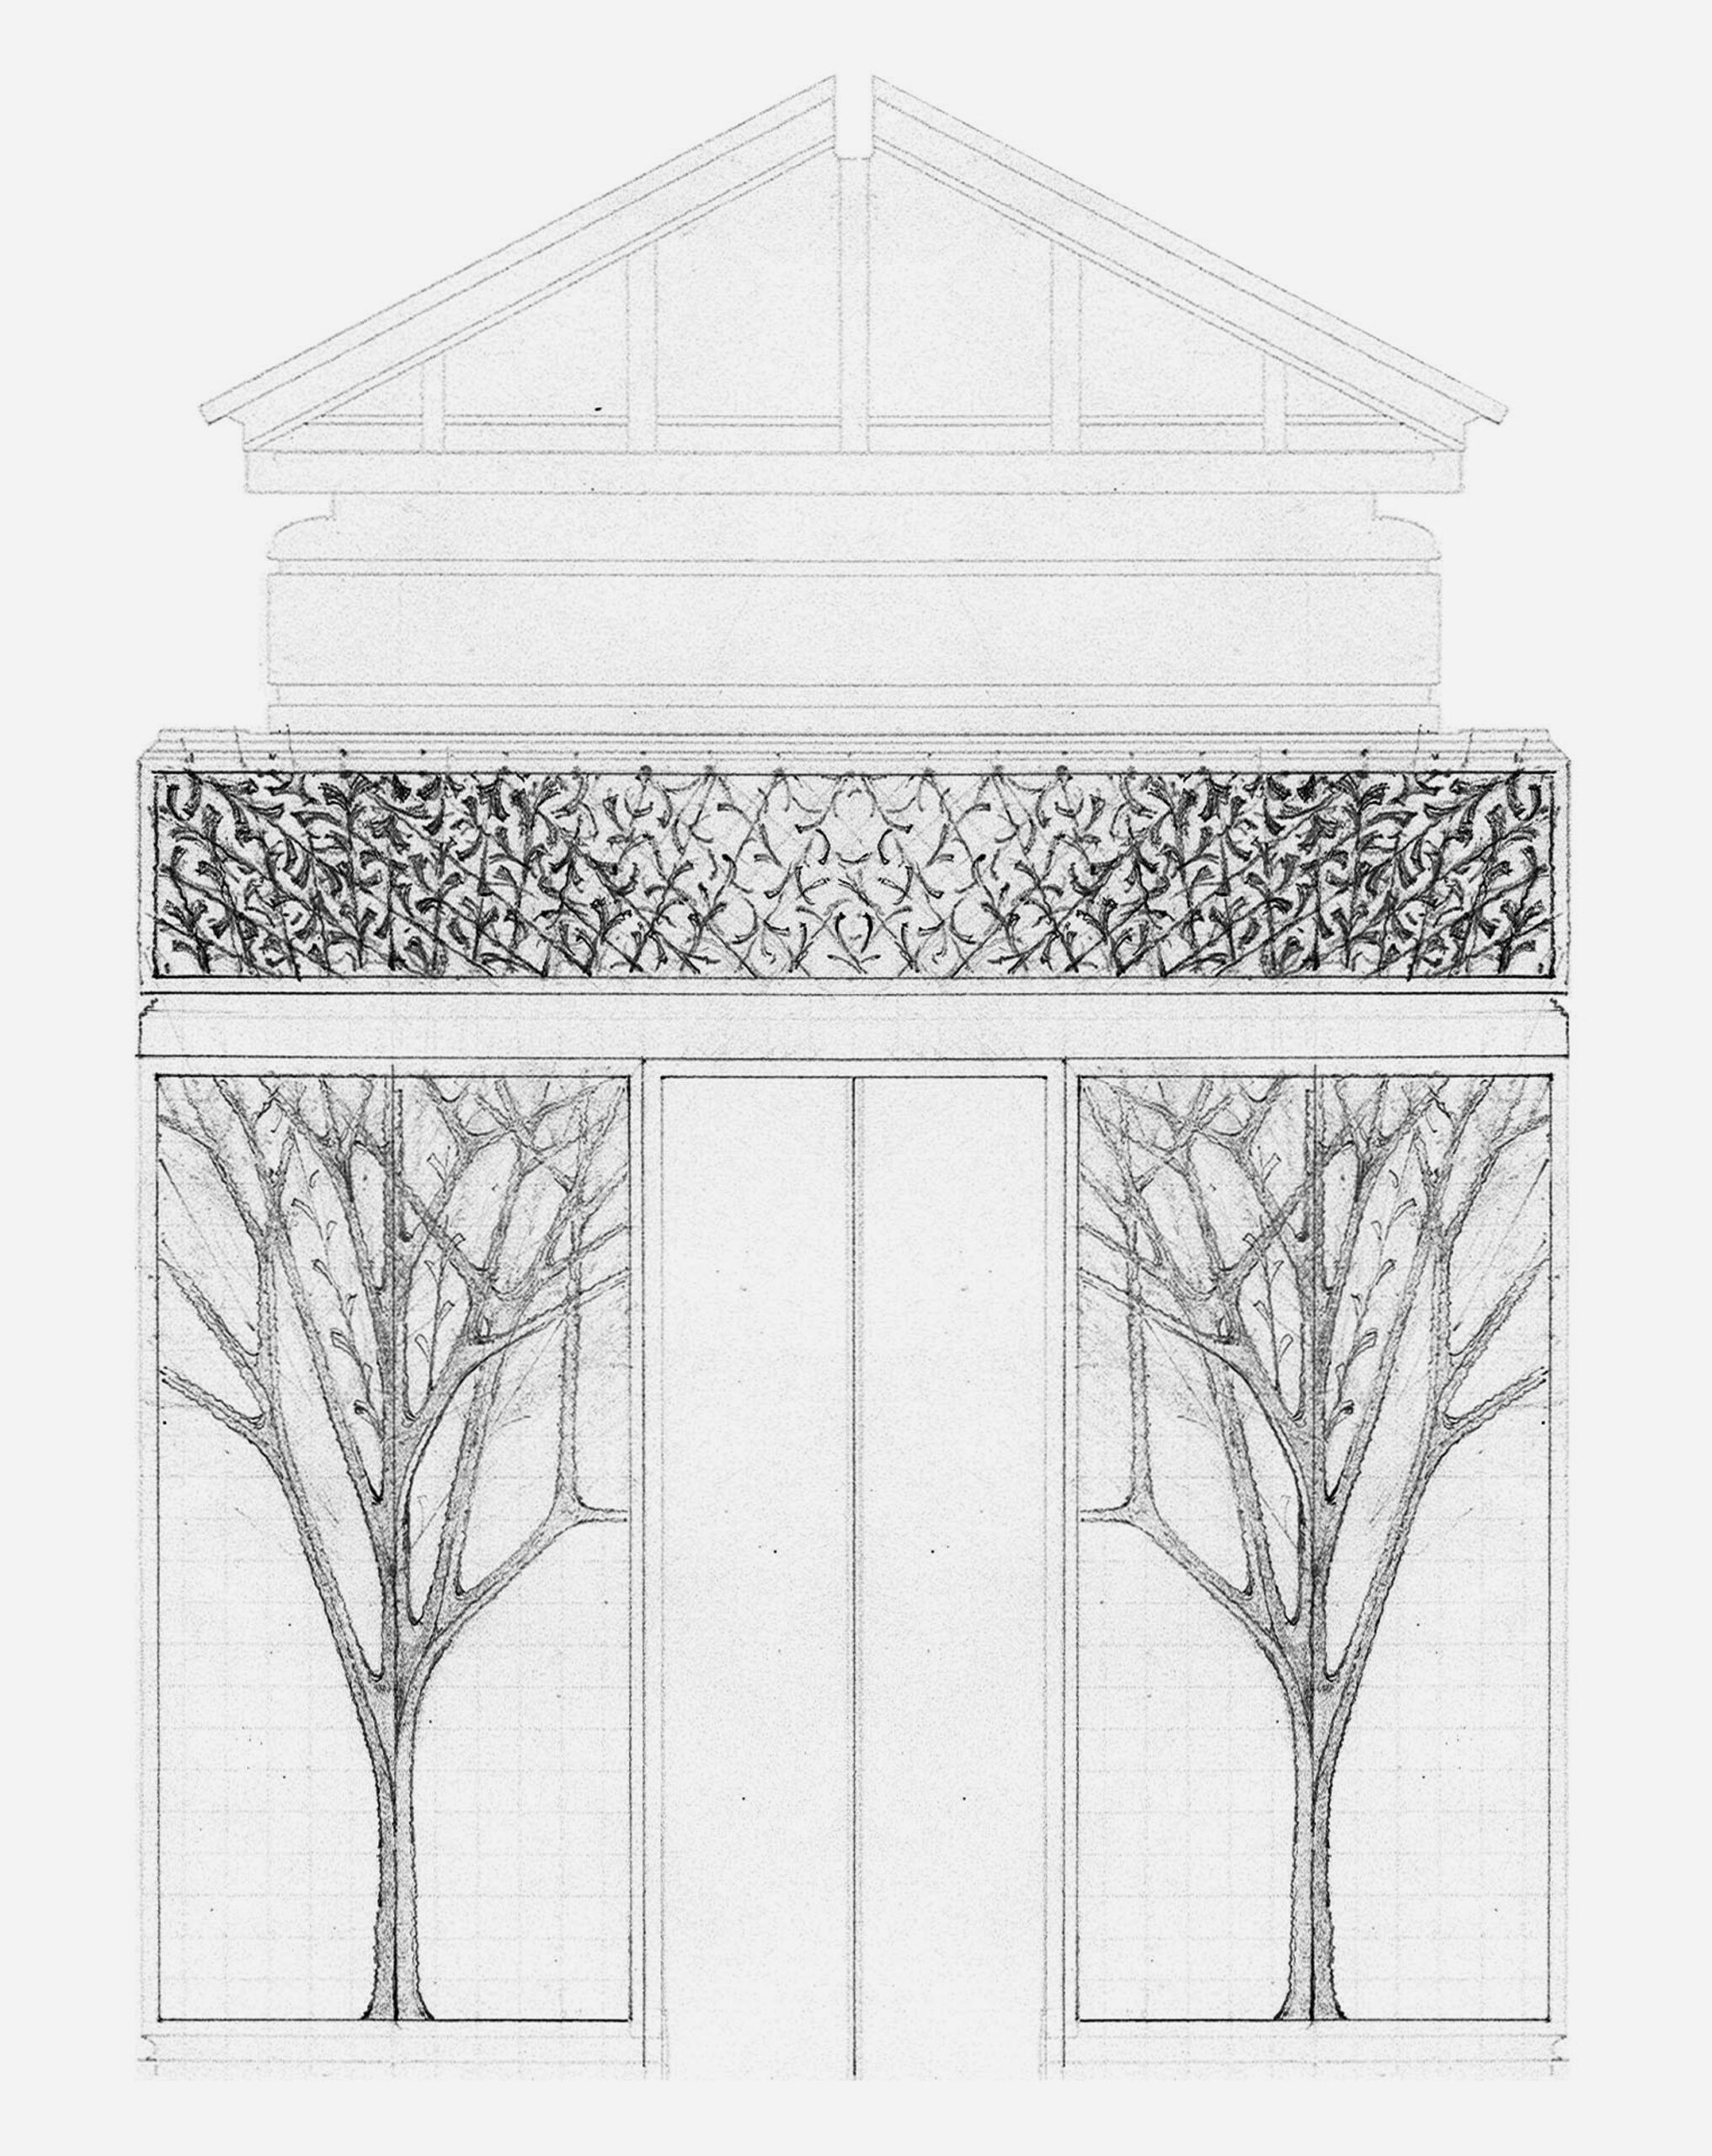 Schwarzman Estate – Garden Pavilion Walls and Bronze Doors